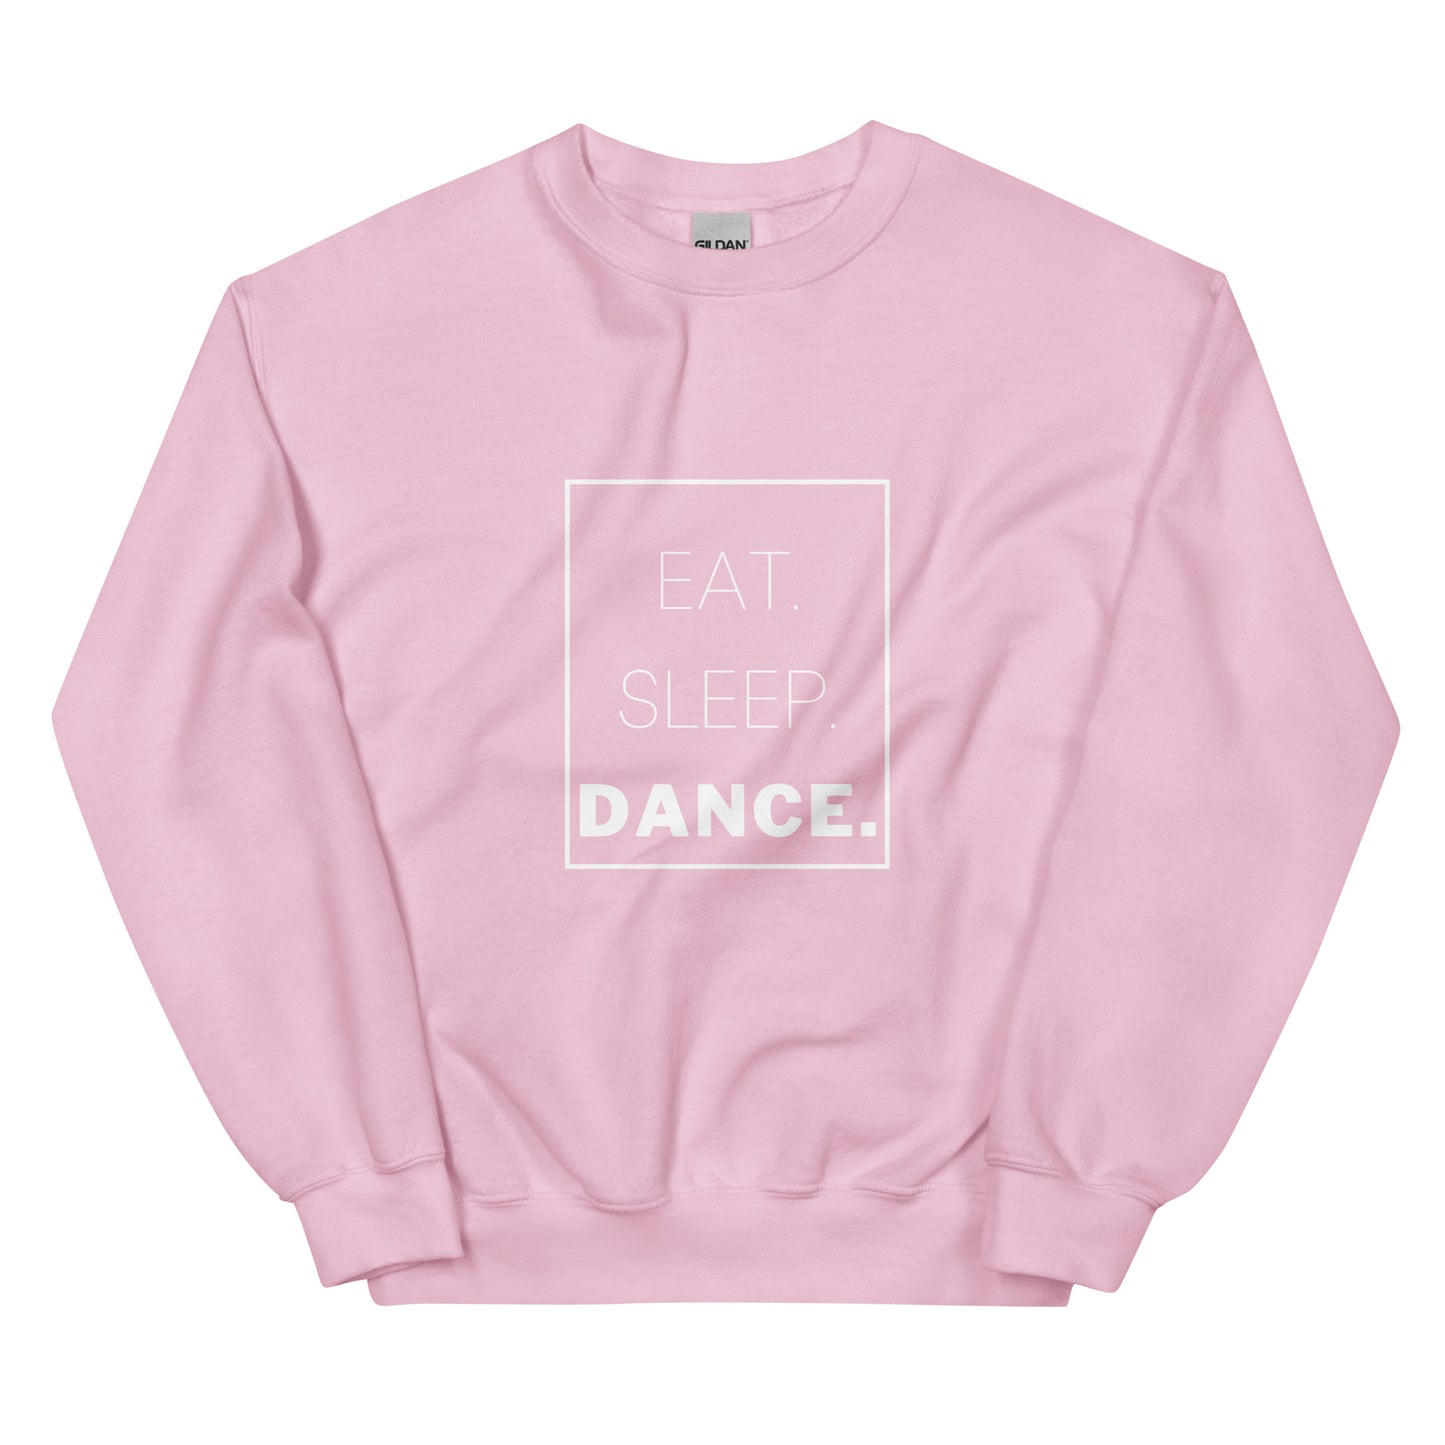 Eat. Sleep. Dance. Unisex Sweatshirt